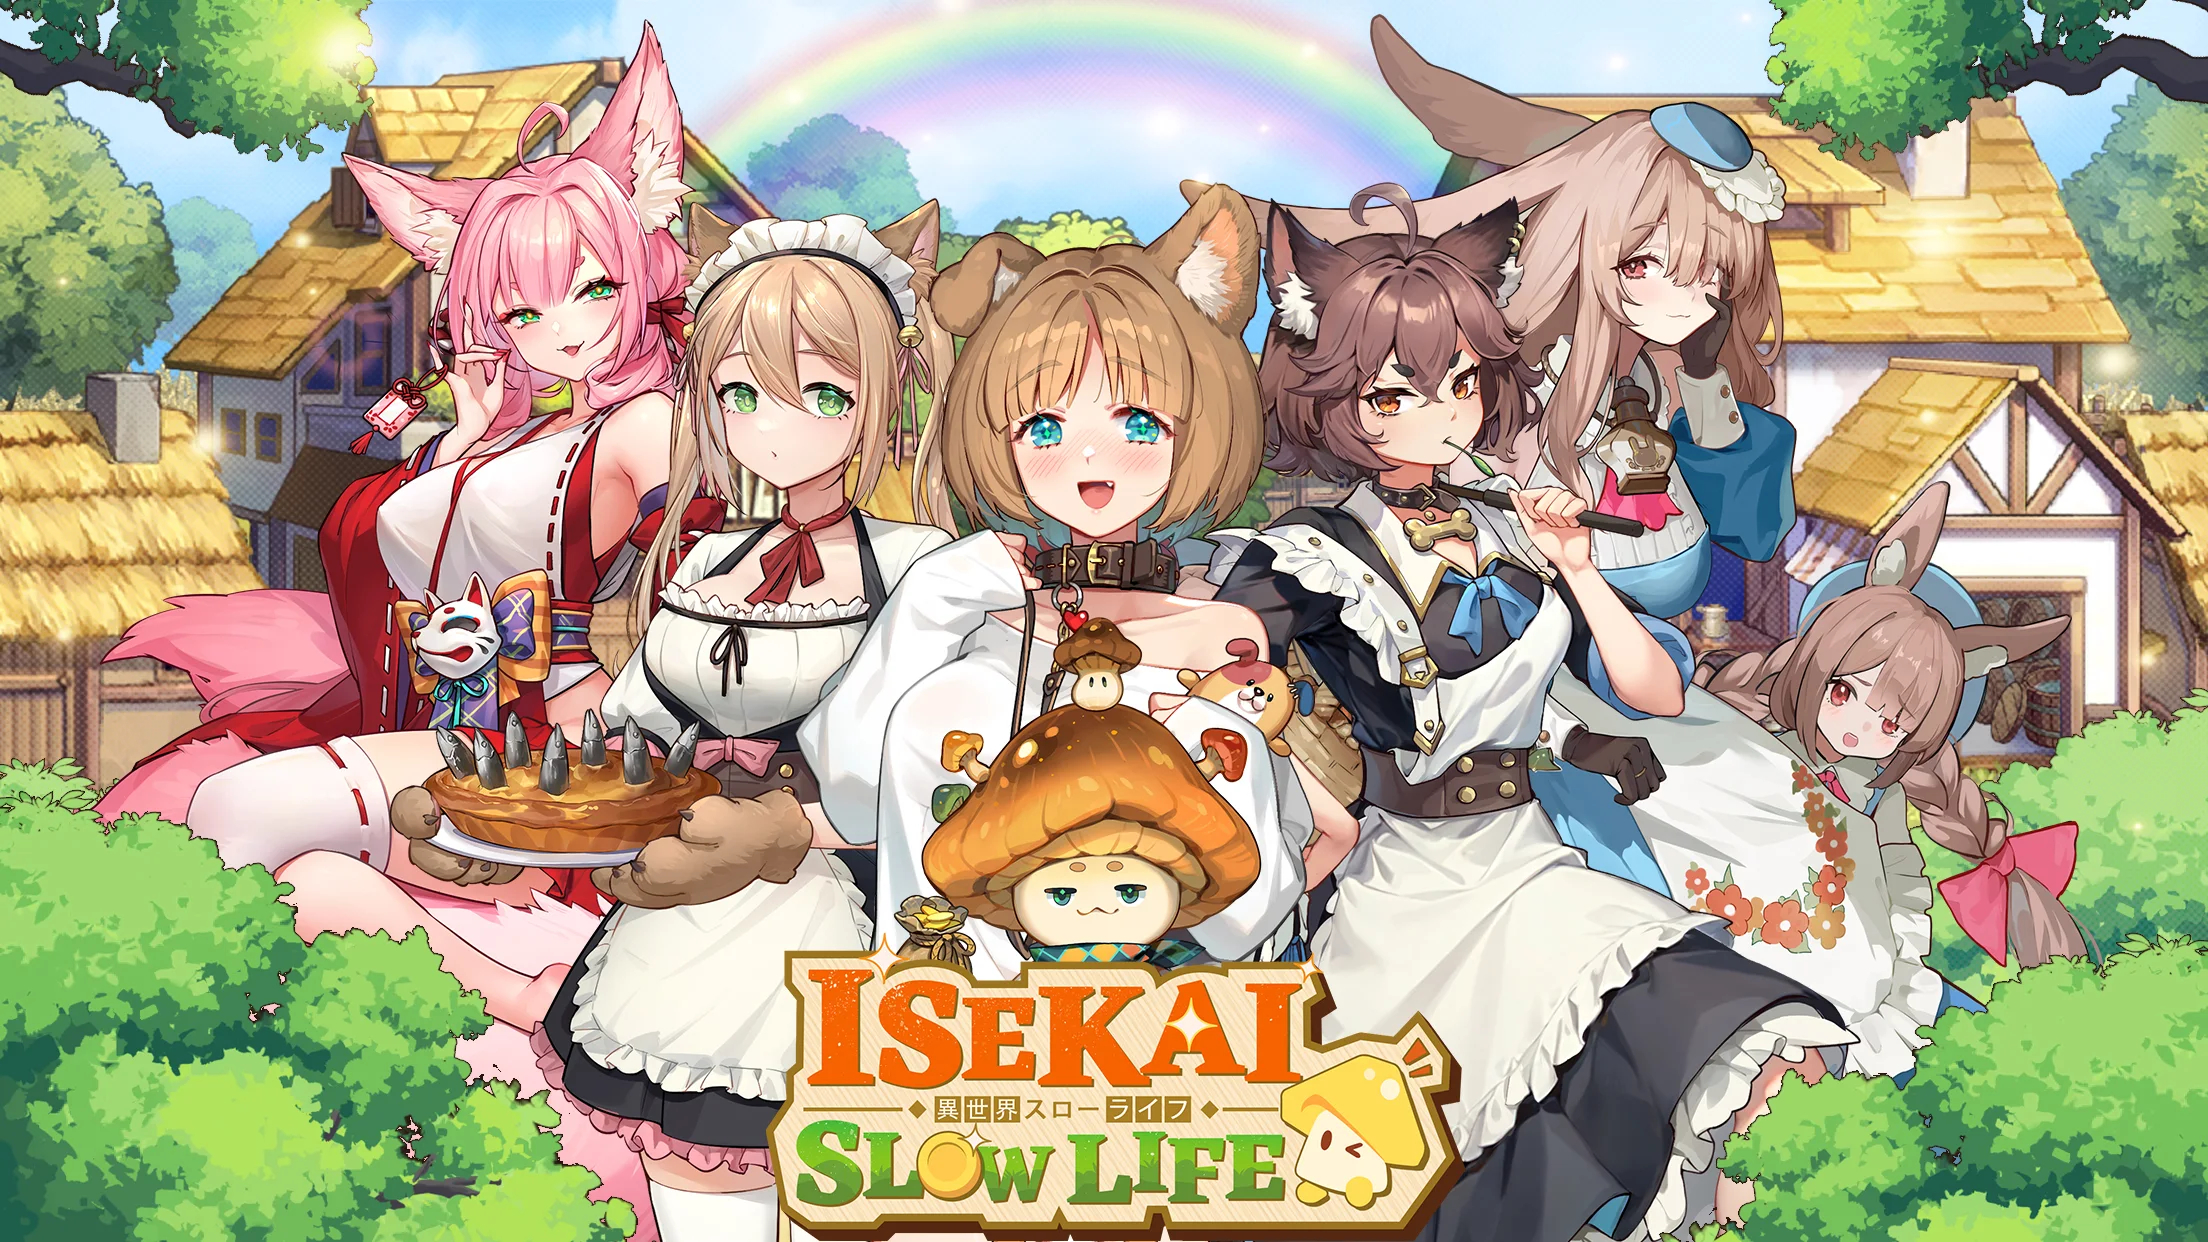 Isekai:Slow Life on PC